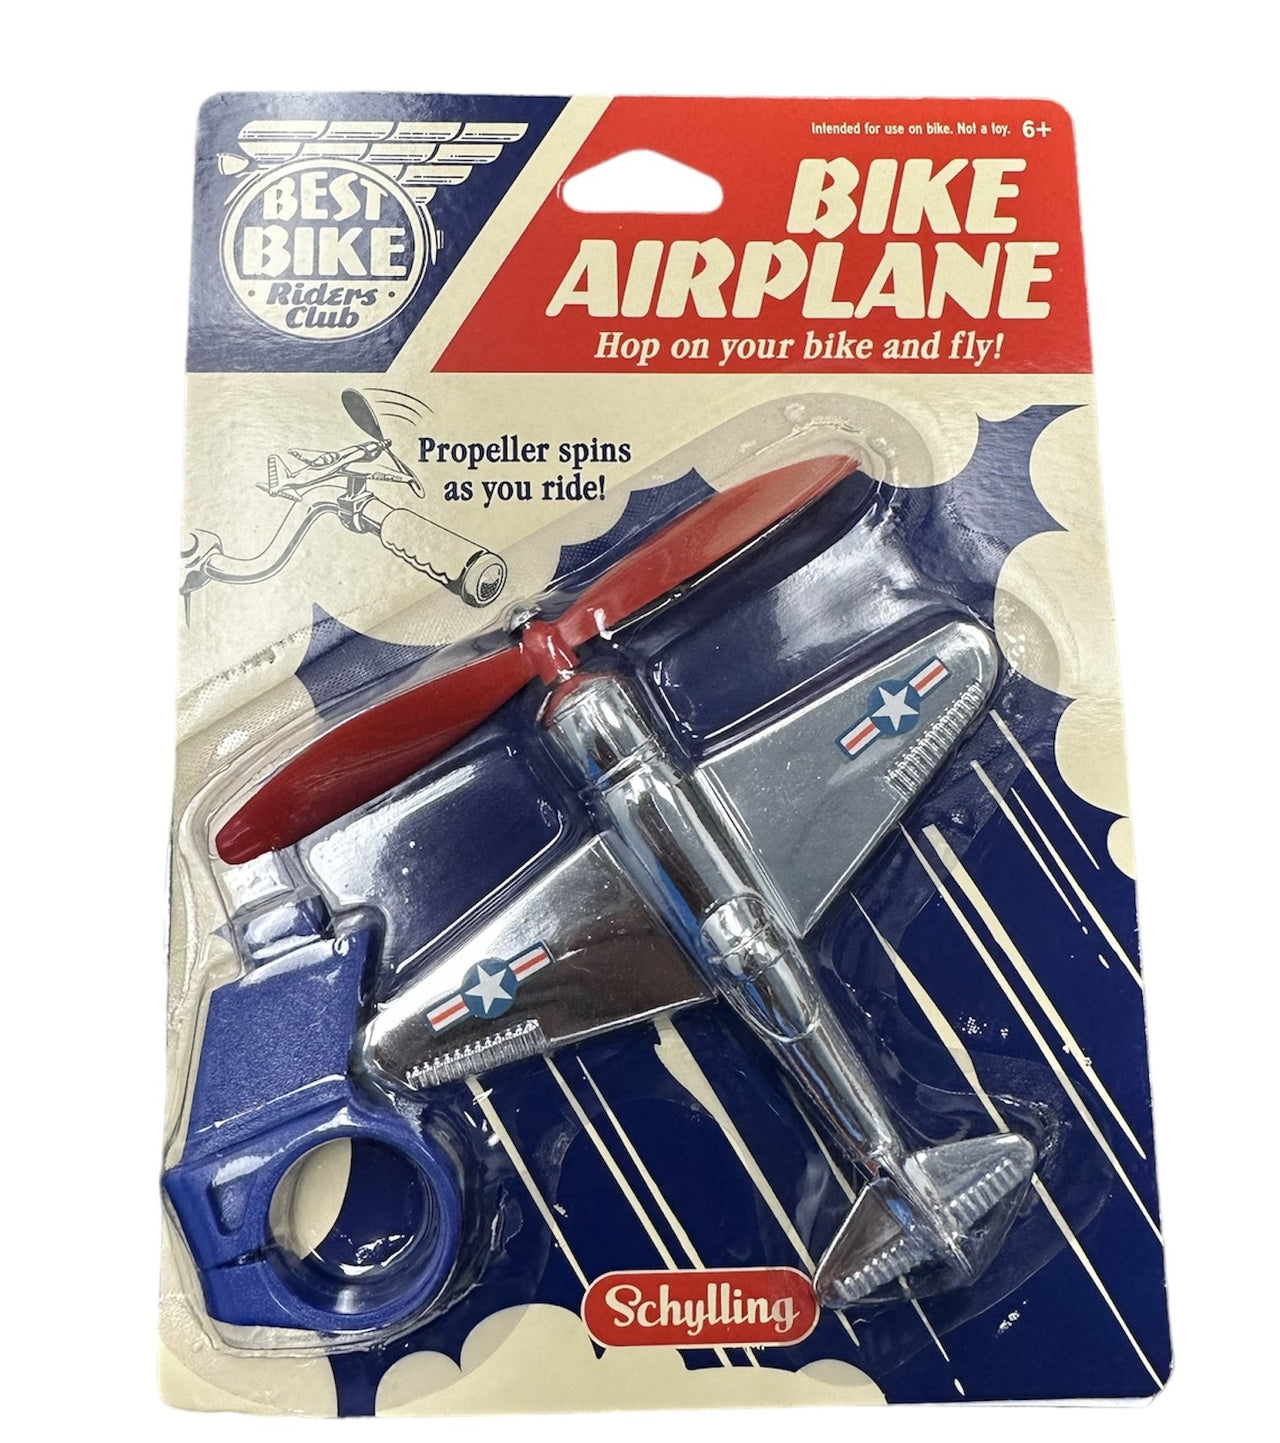 Bike Airplane